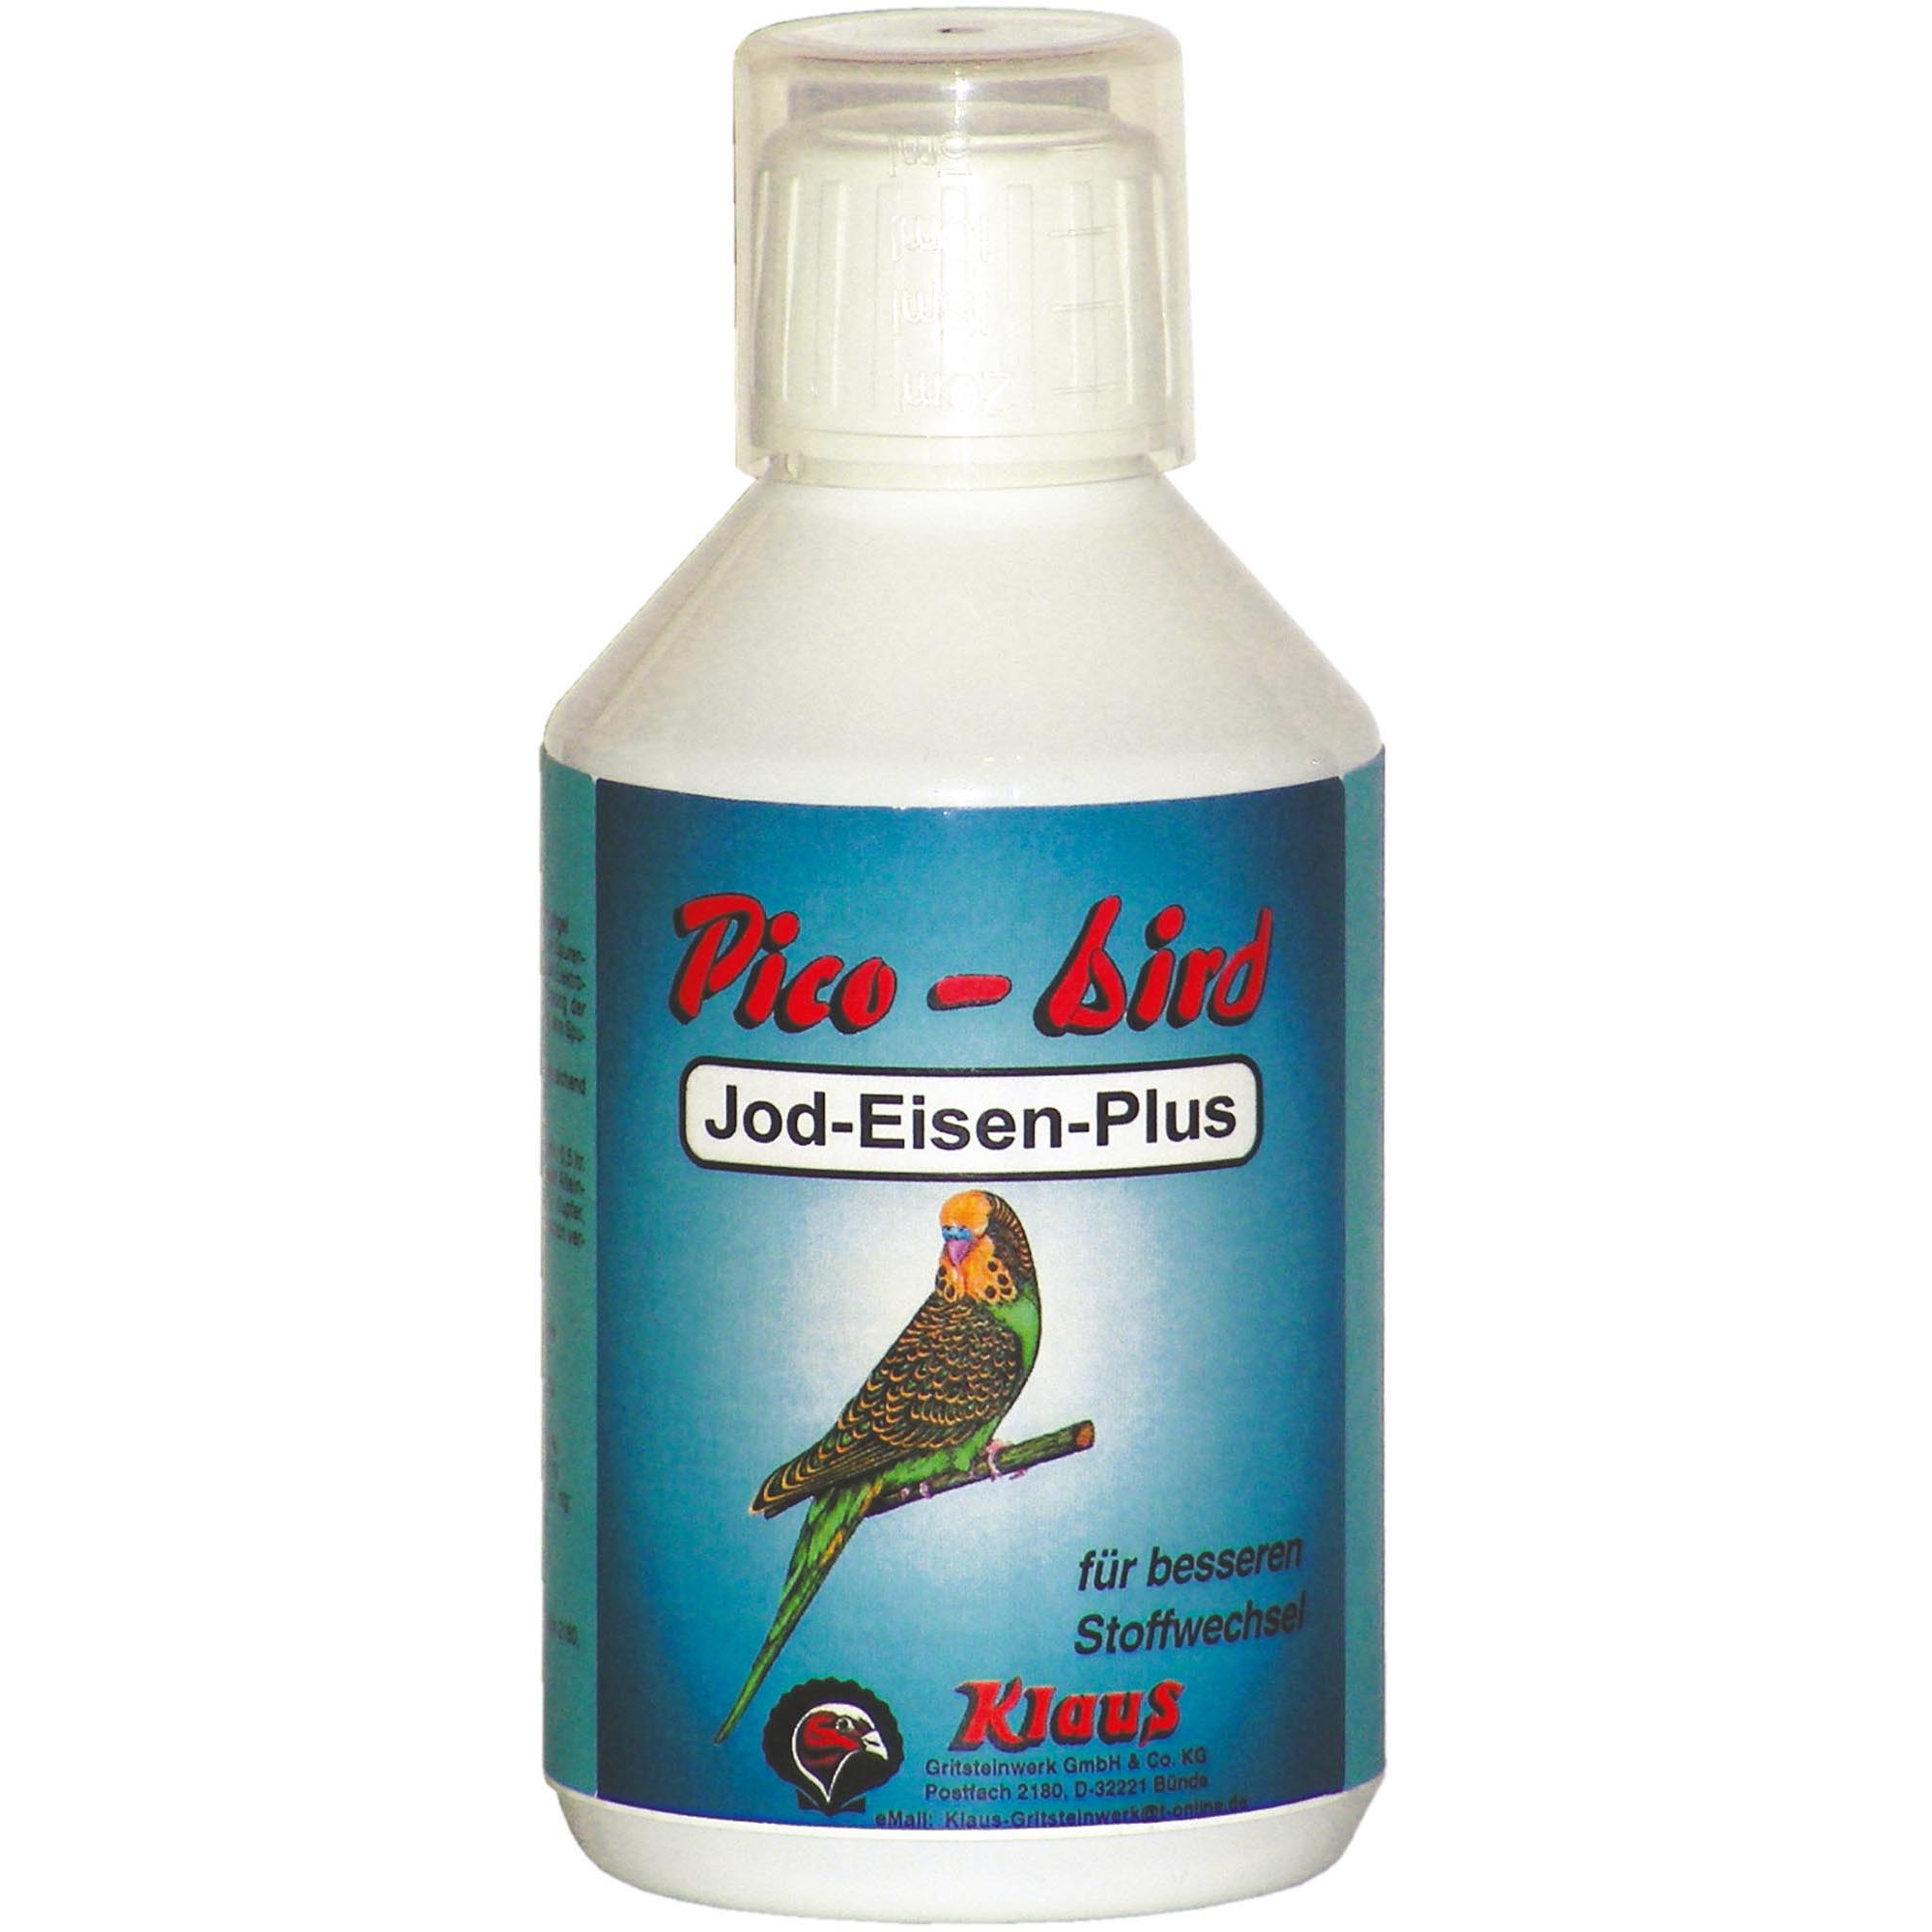 Pico-bird Jod Eisen Plus